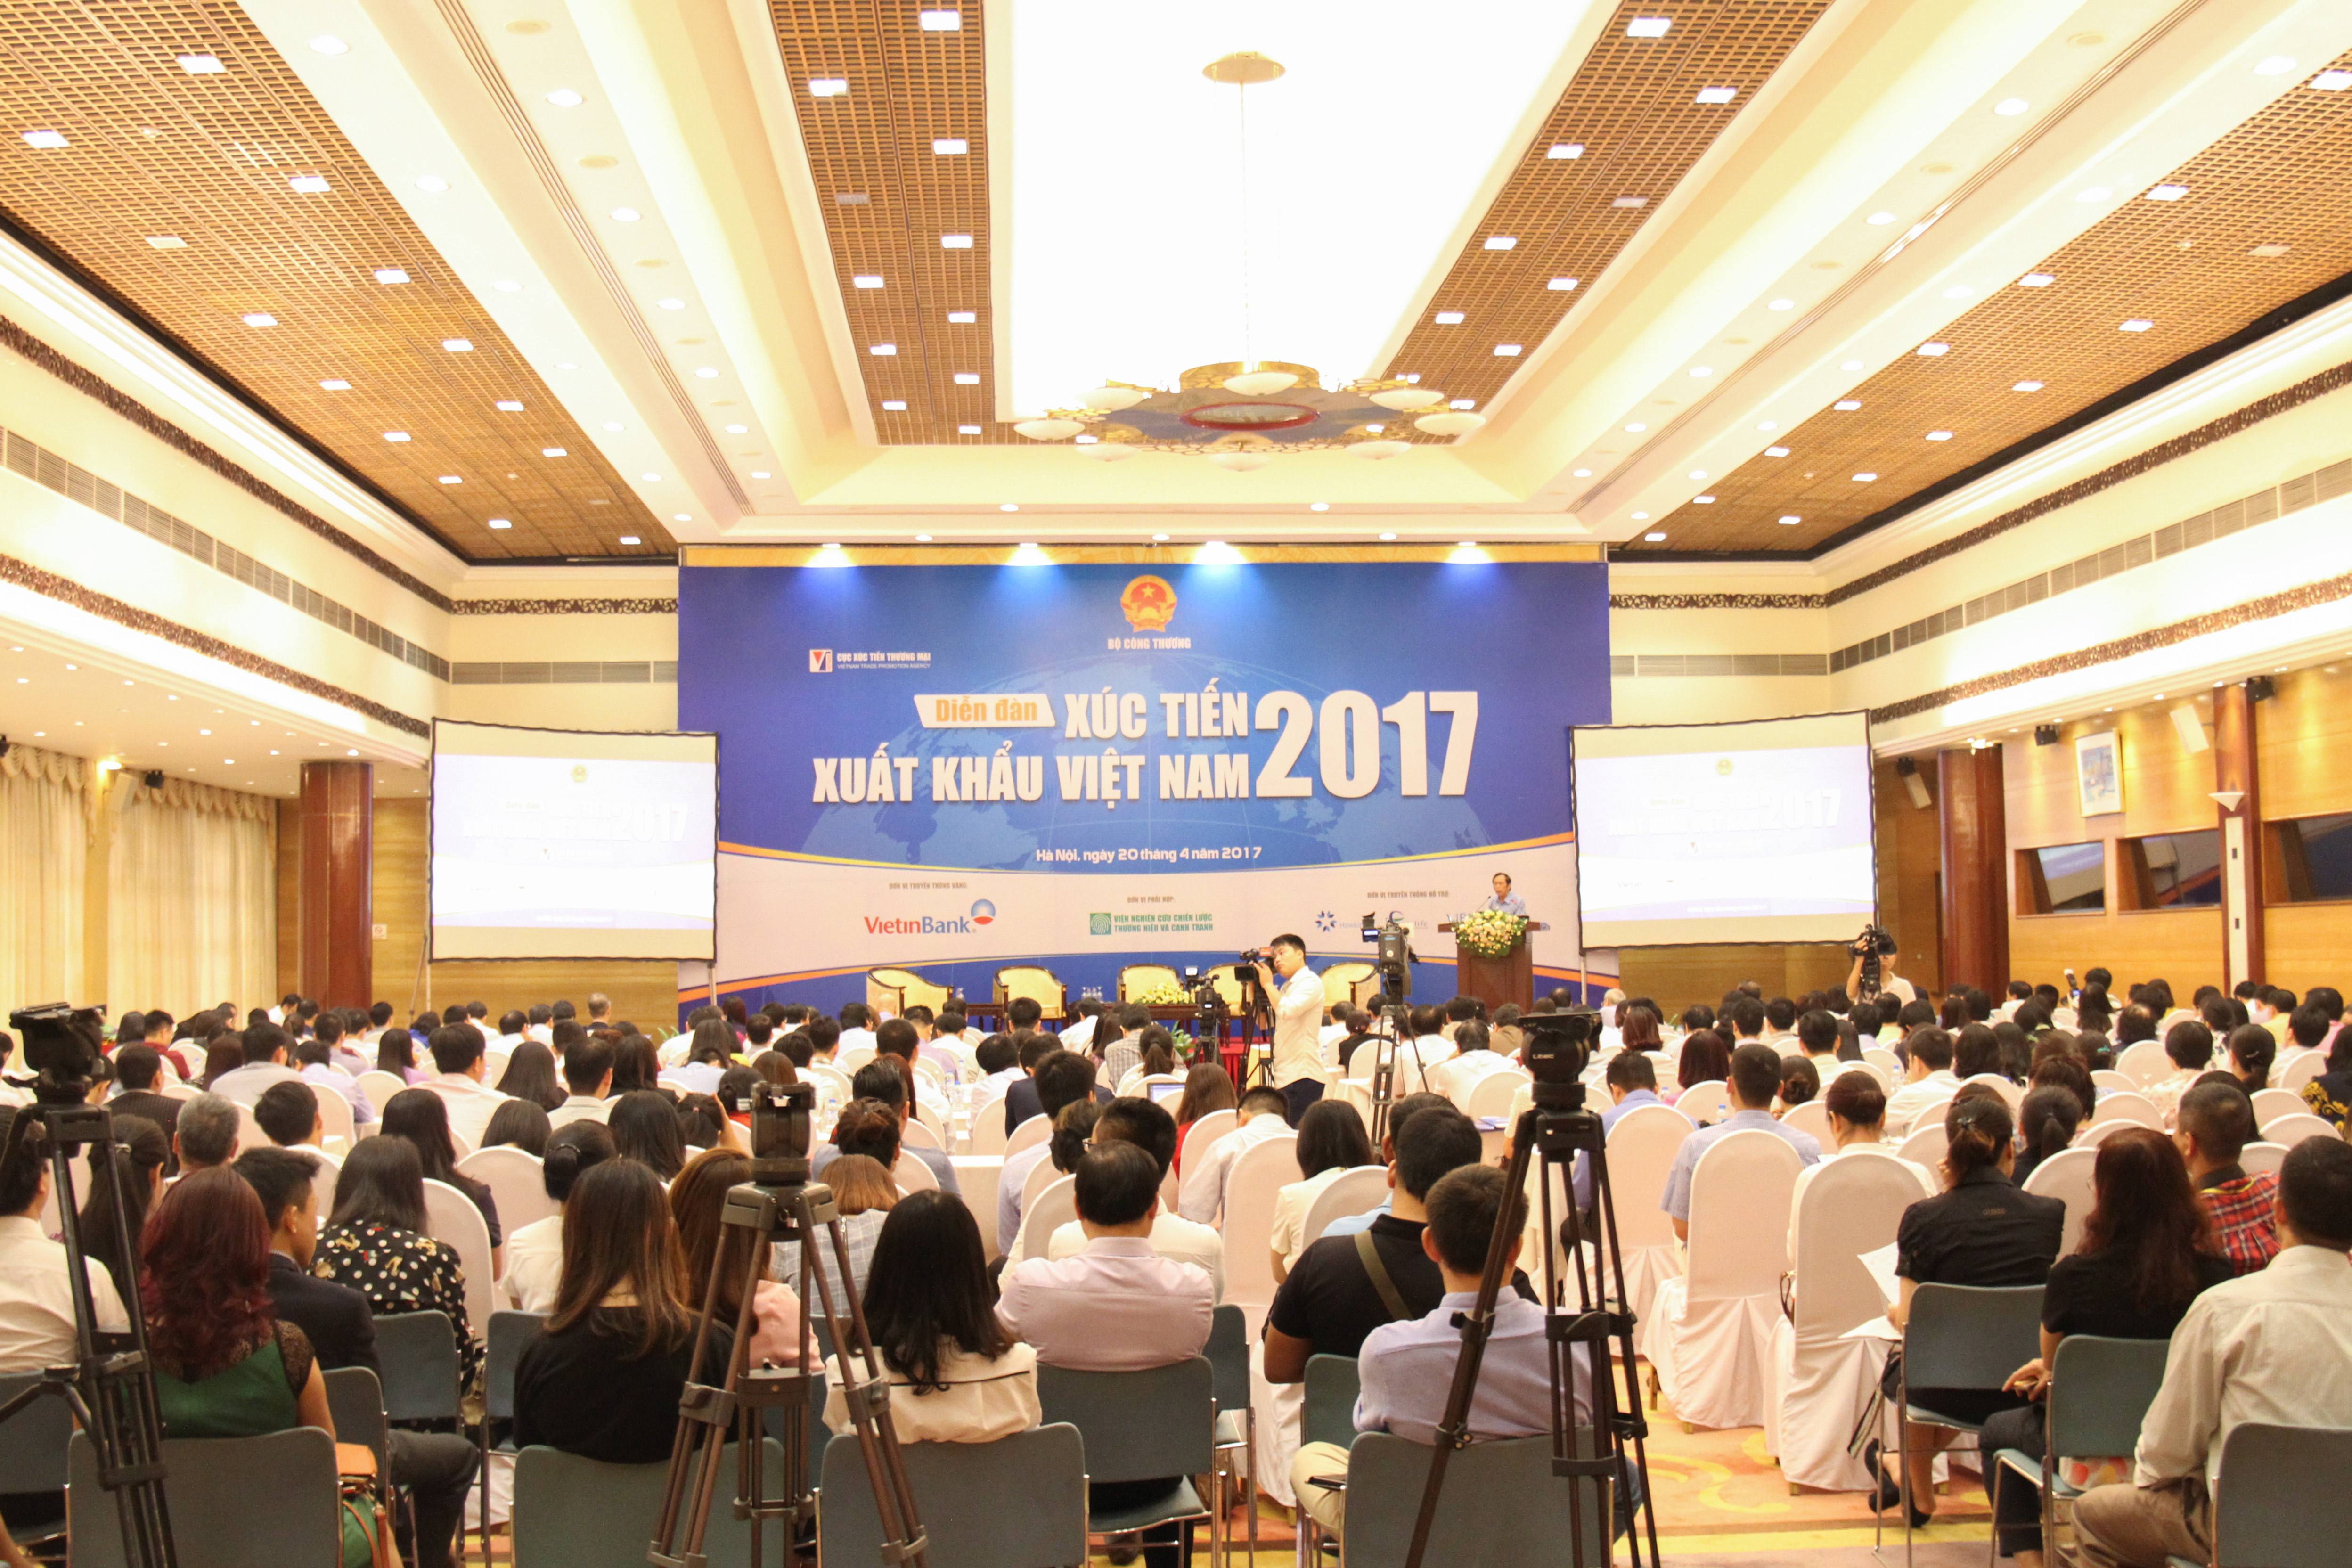 VIETNAM EXPO 2018: “Tăng cường kết nối kinh tế khu vực và quốc tế” - Sunlin  Electronics Việt Nam, Sunlin Vina